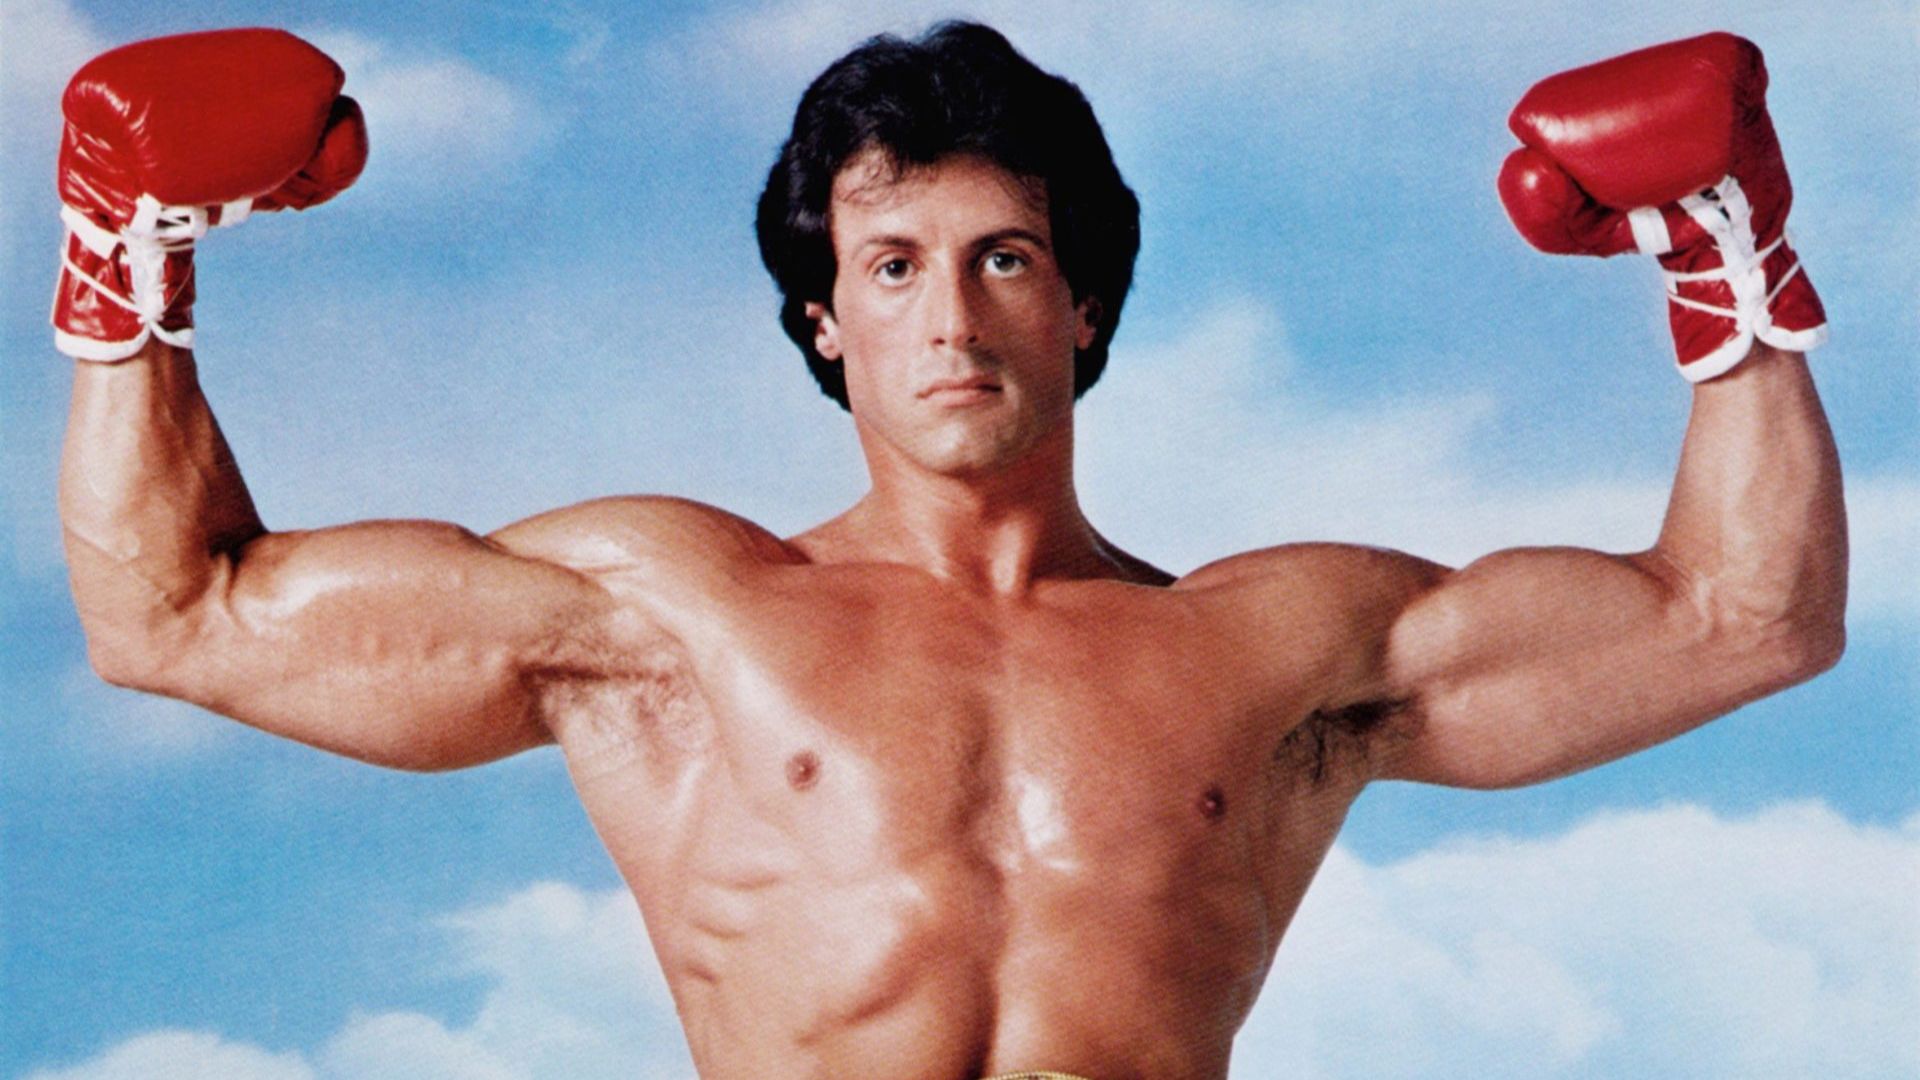 Primeiro Filme Do Rocky Balboa Sylvester Stallone fez quanto dinheiro com a franquia Rocky Balboa?